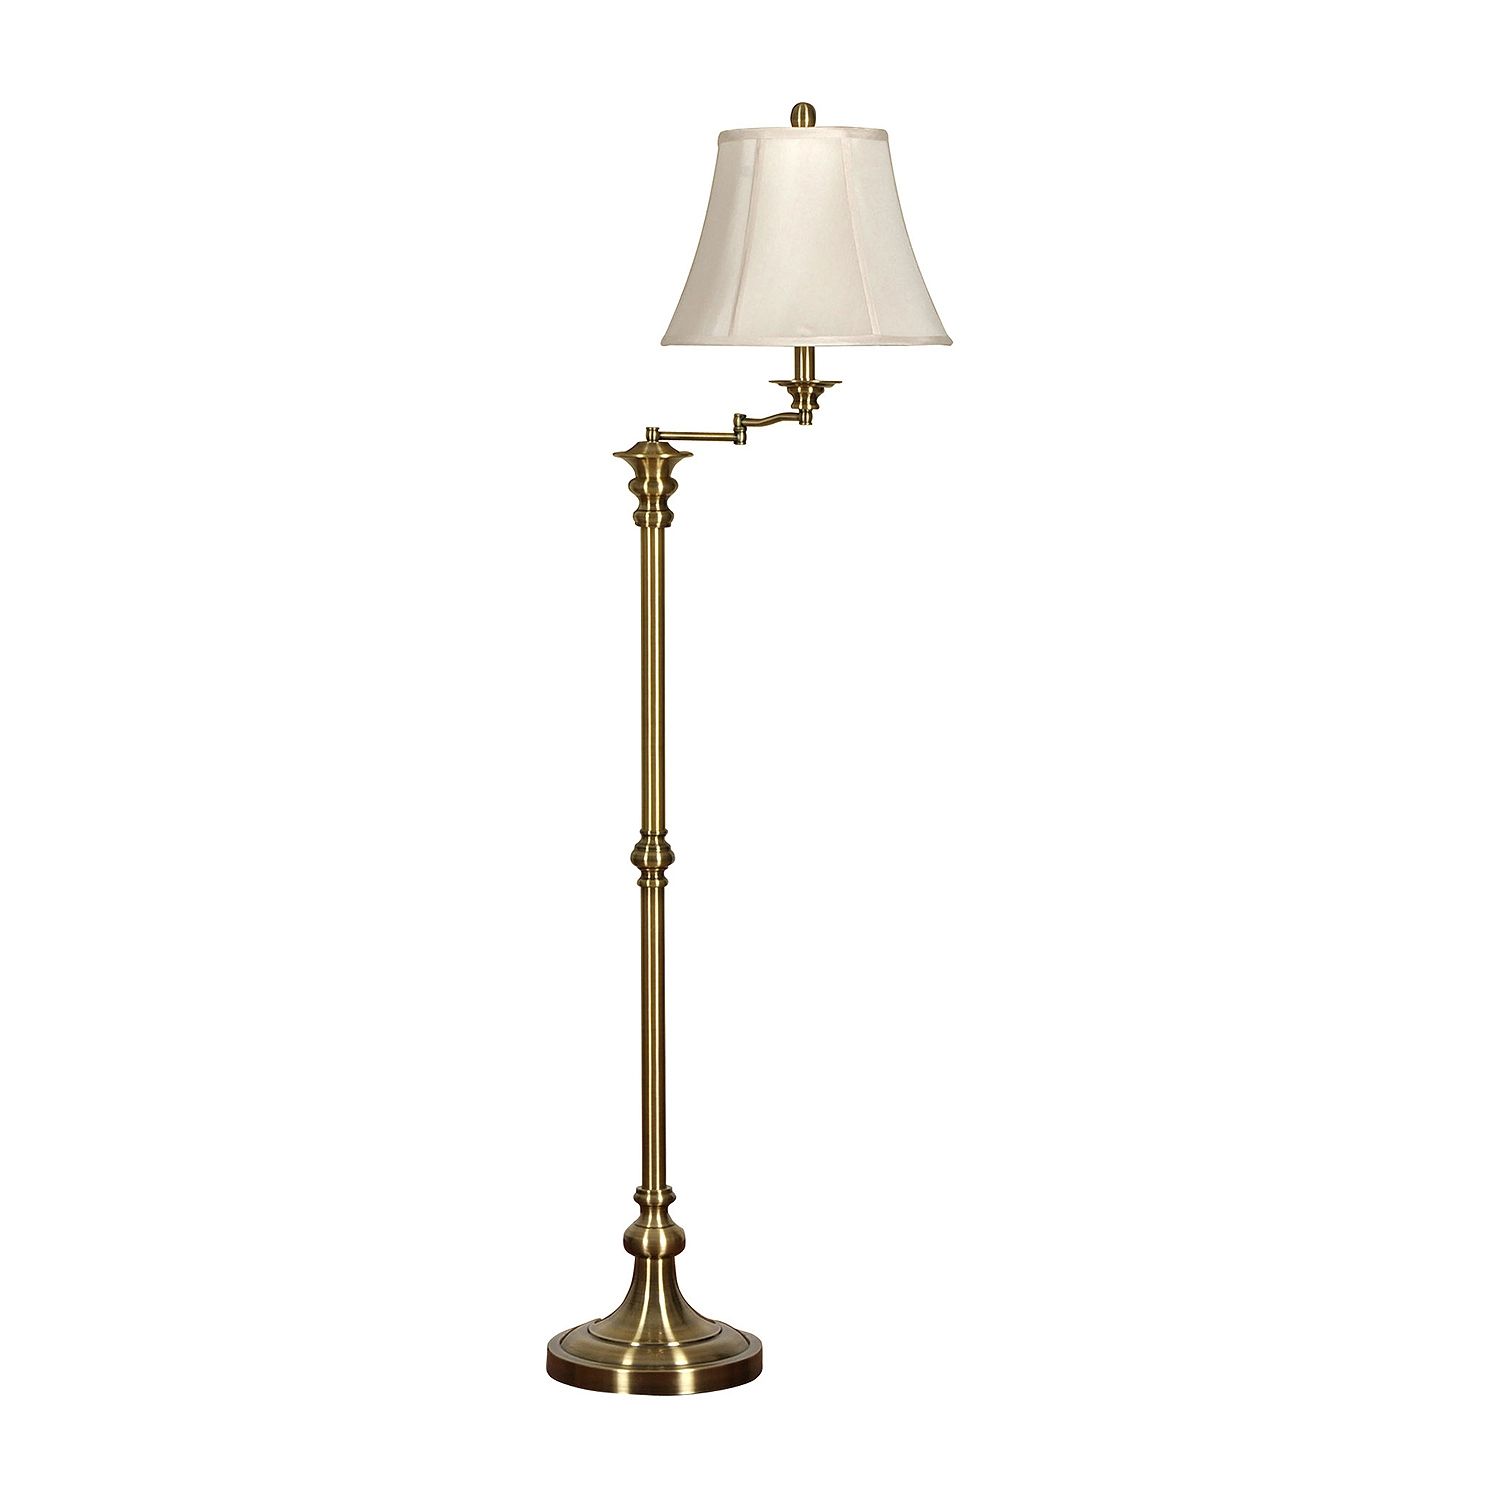 Stylecraft 14 W Antique Brass Steel Floor Lamp | JCPenney